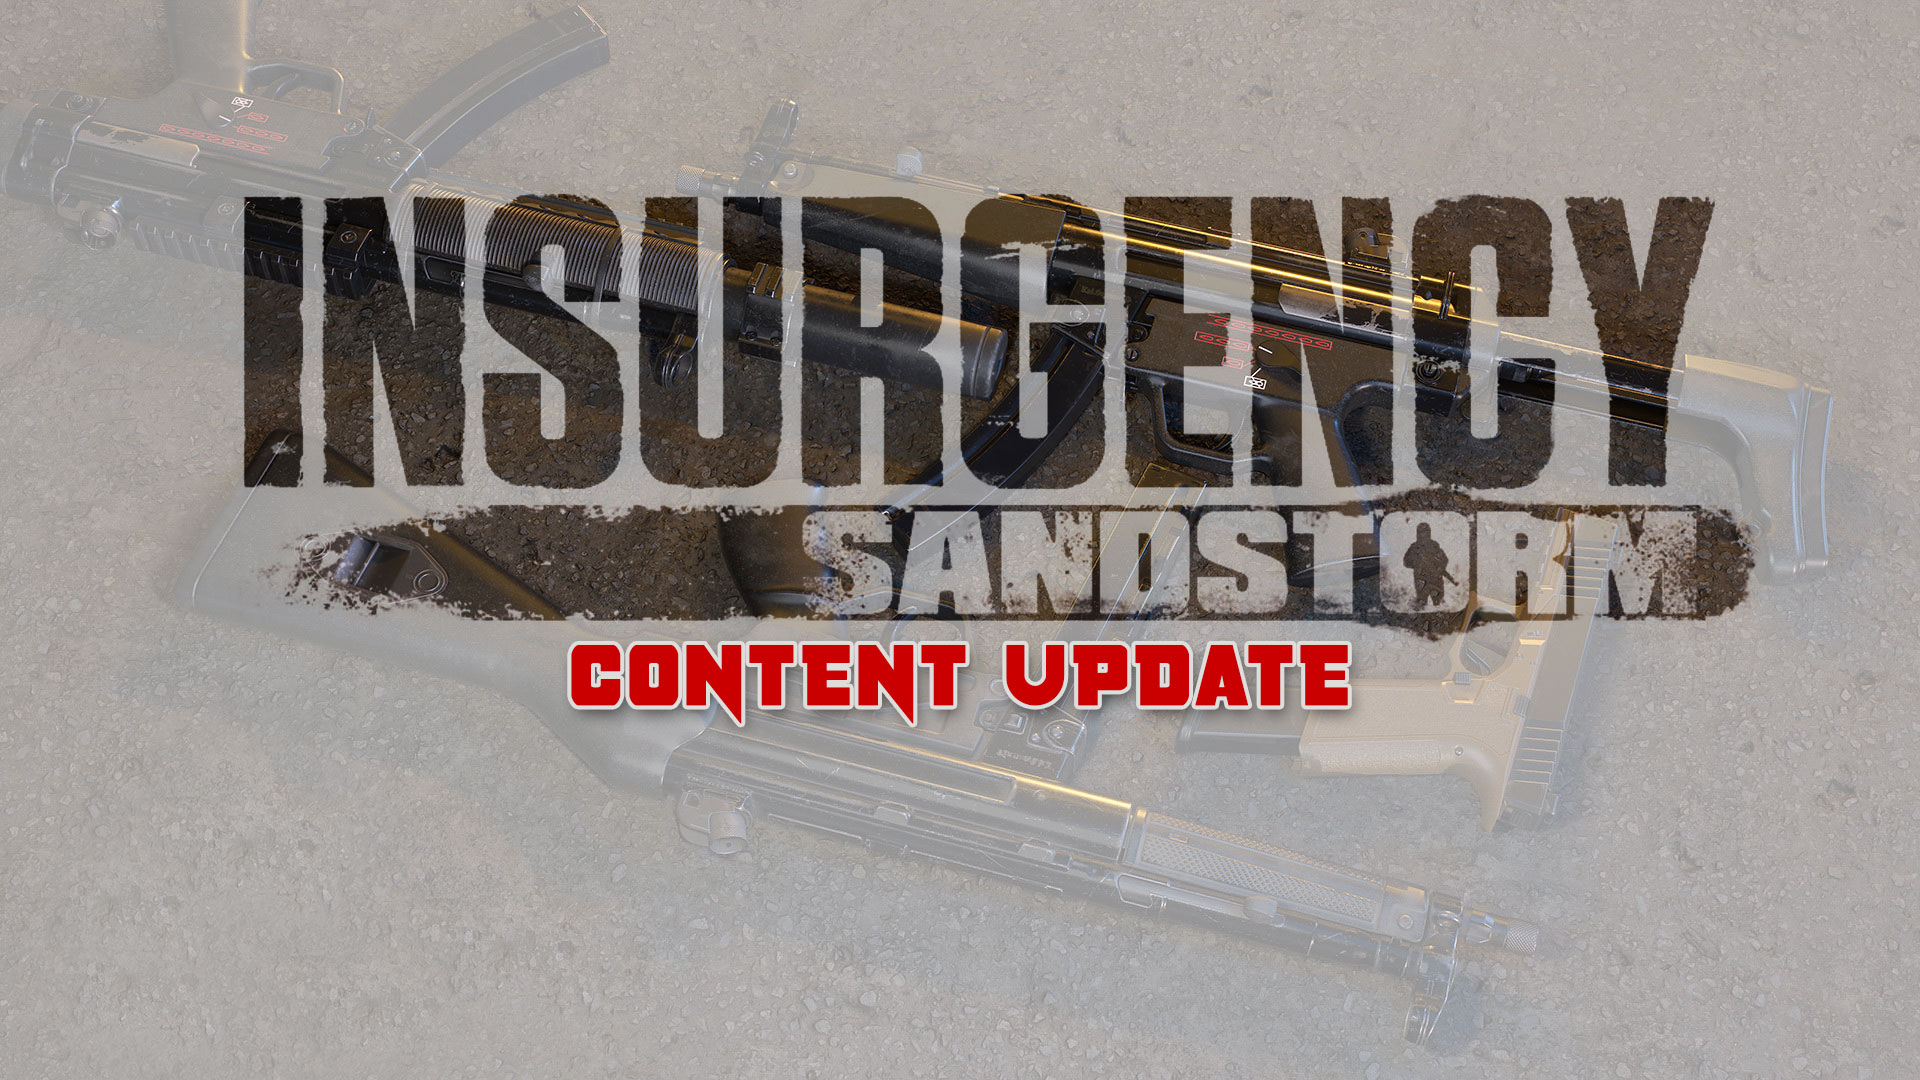 insurgency sandstorm content update